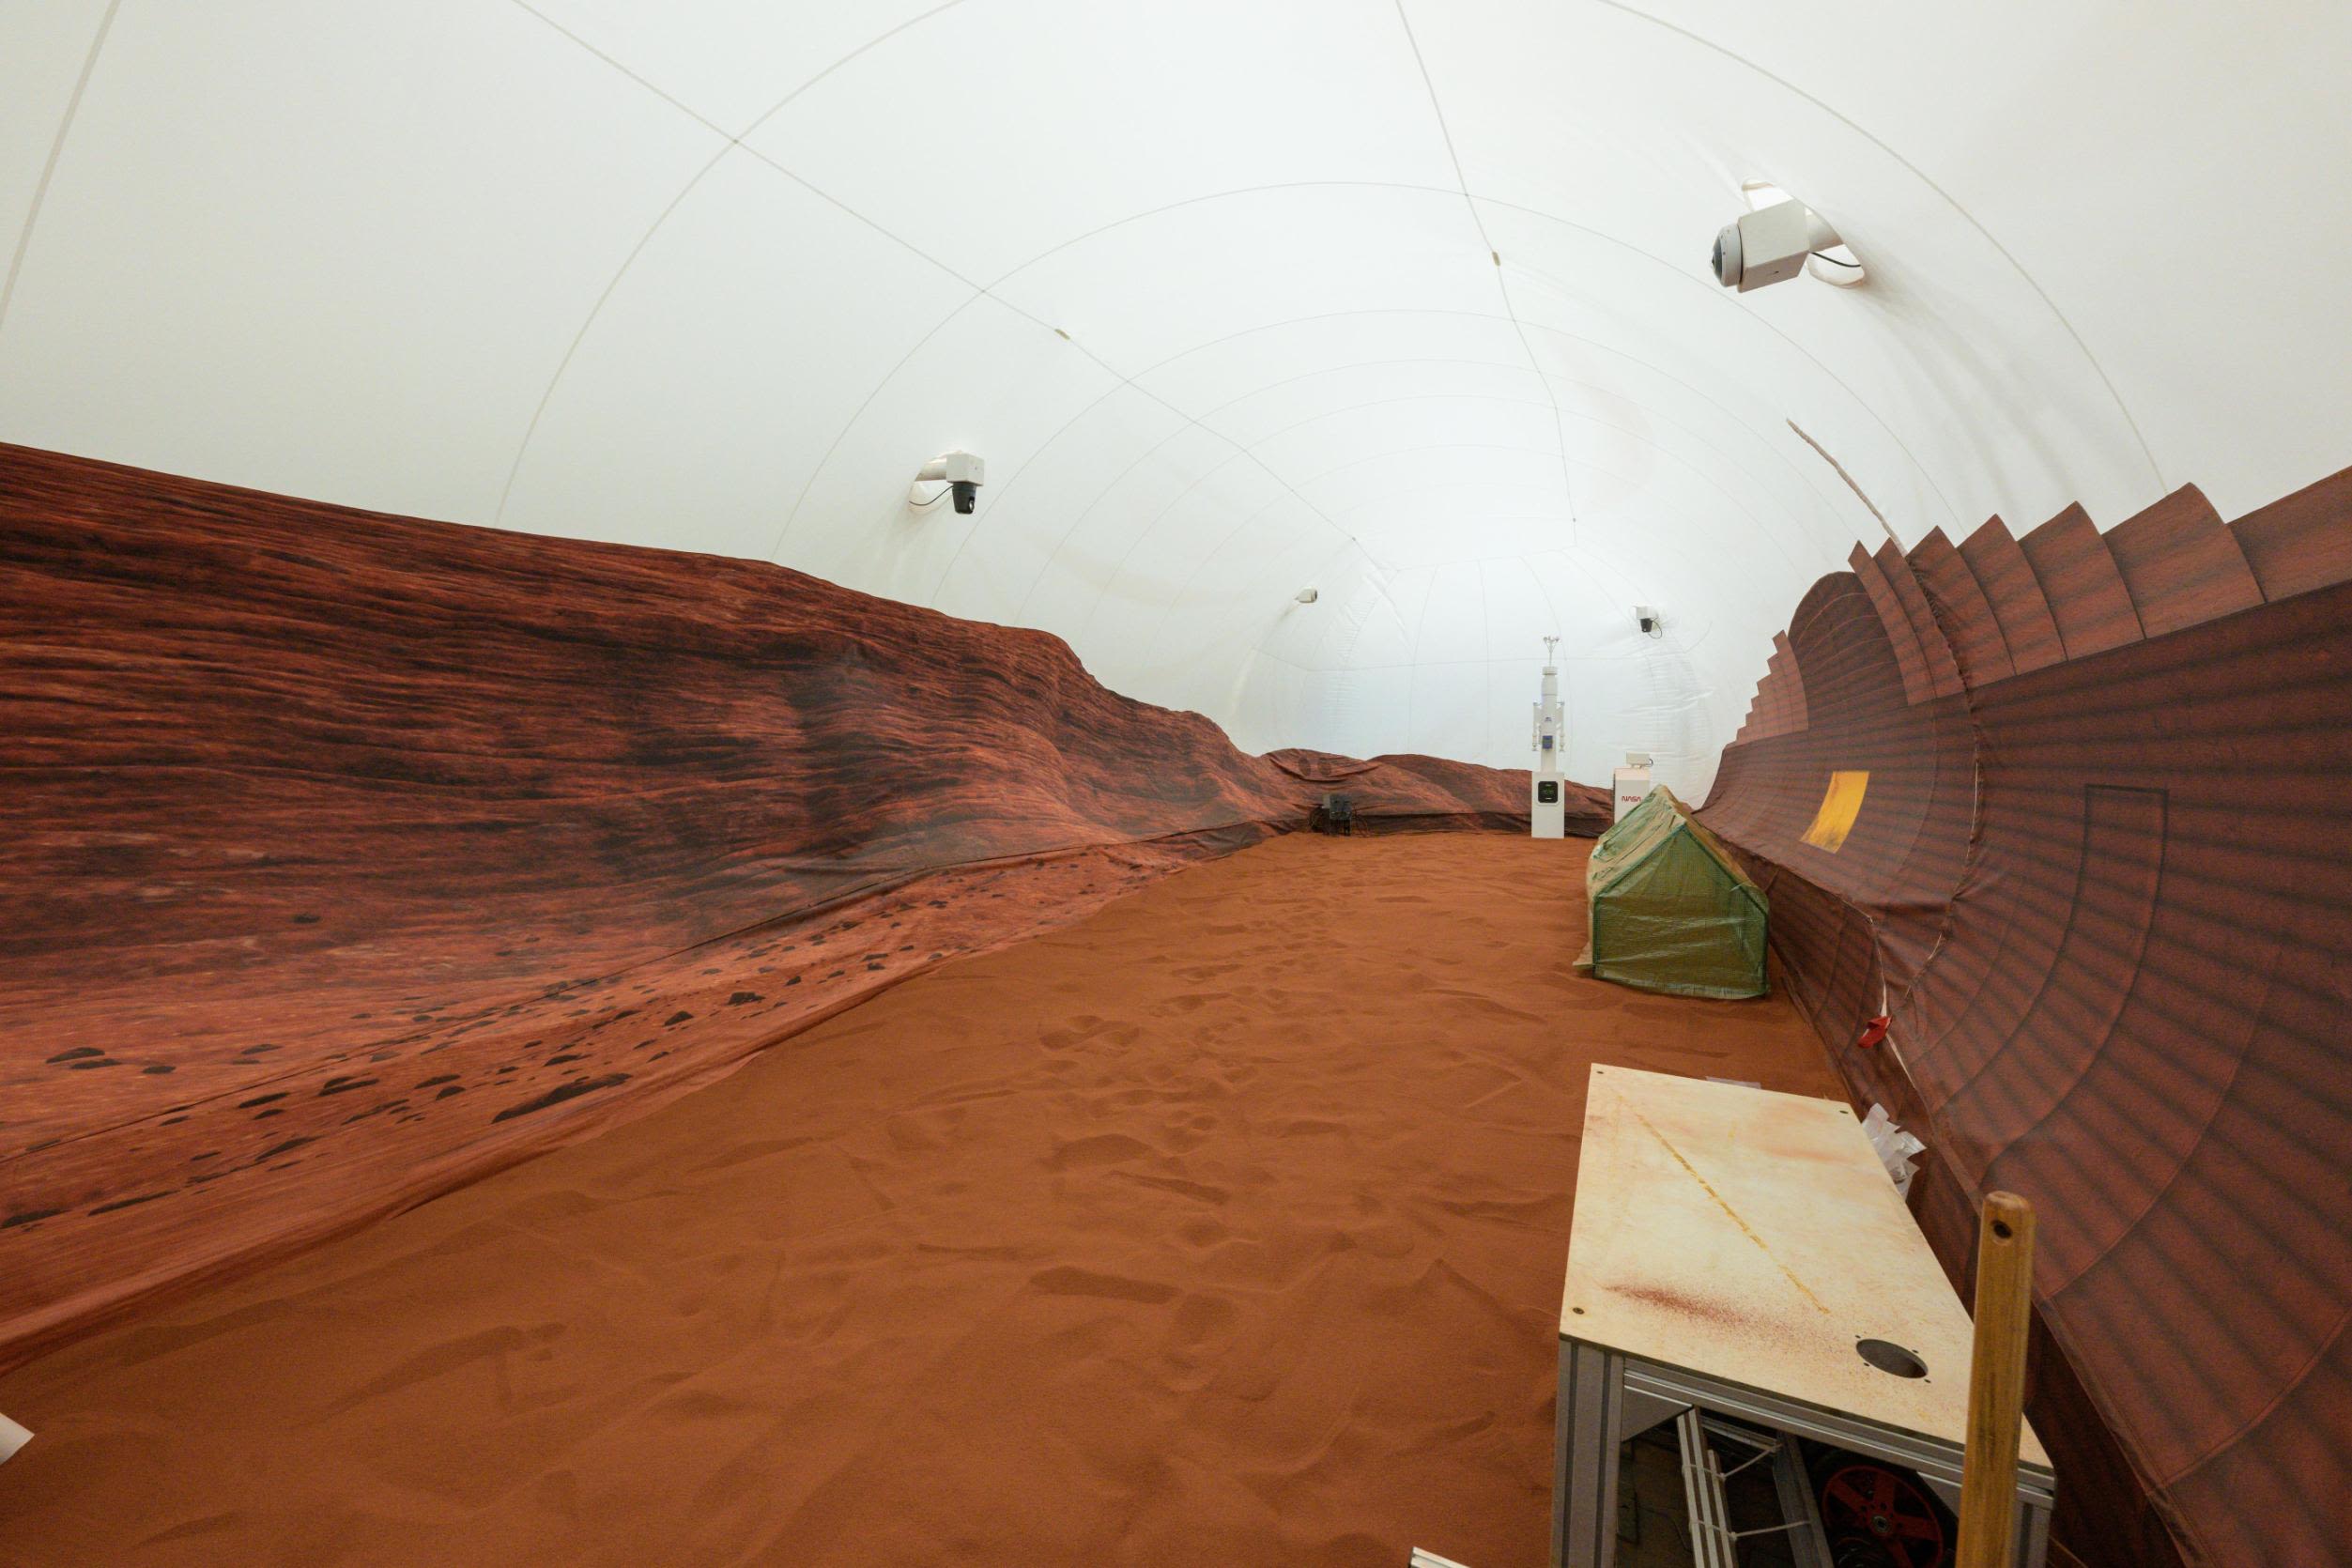 Posada NASA-inog simuliranog Marsovskog habitata izašla nakon godine dana izolacije